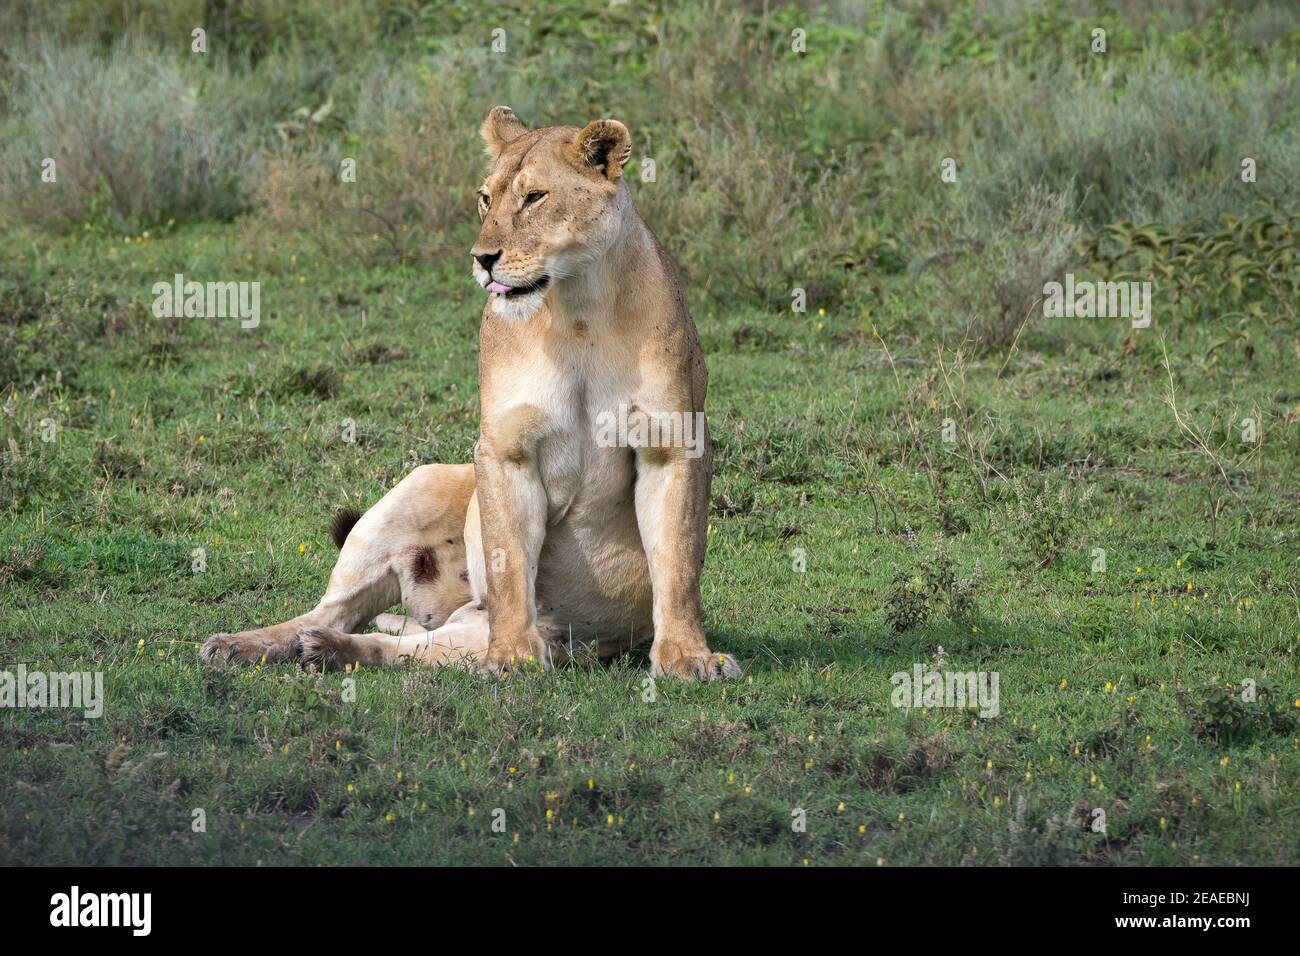 Una leonessa con una gamba ferita seduta sulle praterie dell'Africa. Foto Stock